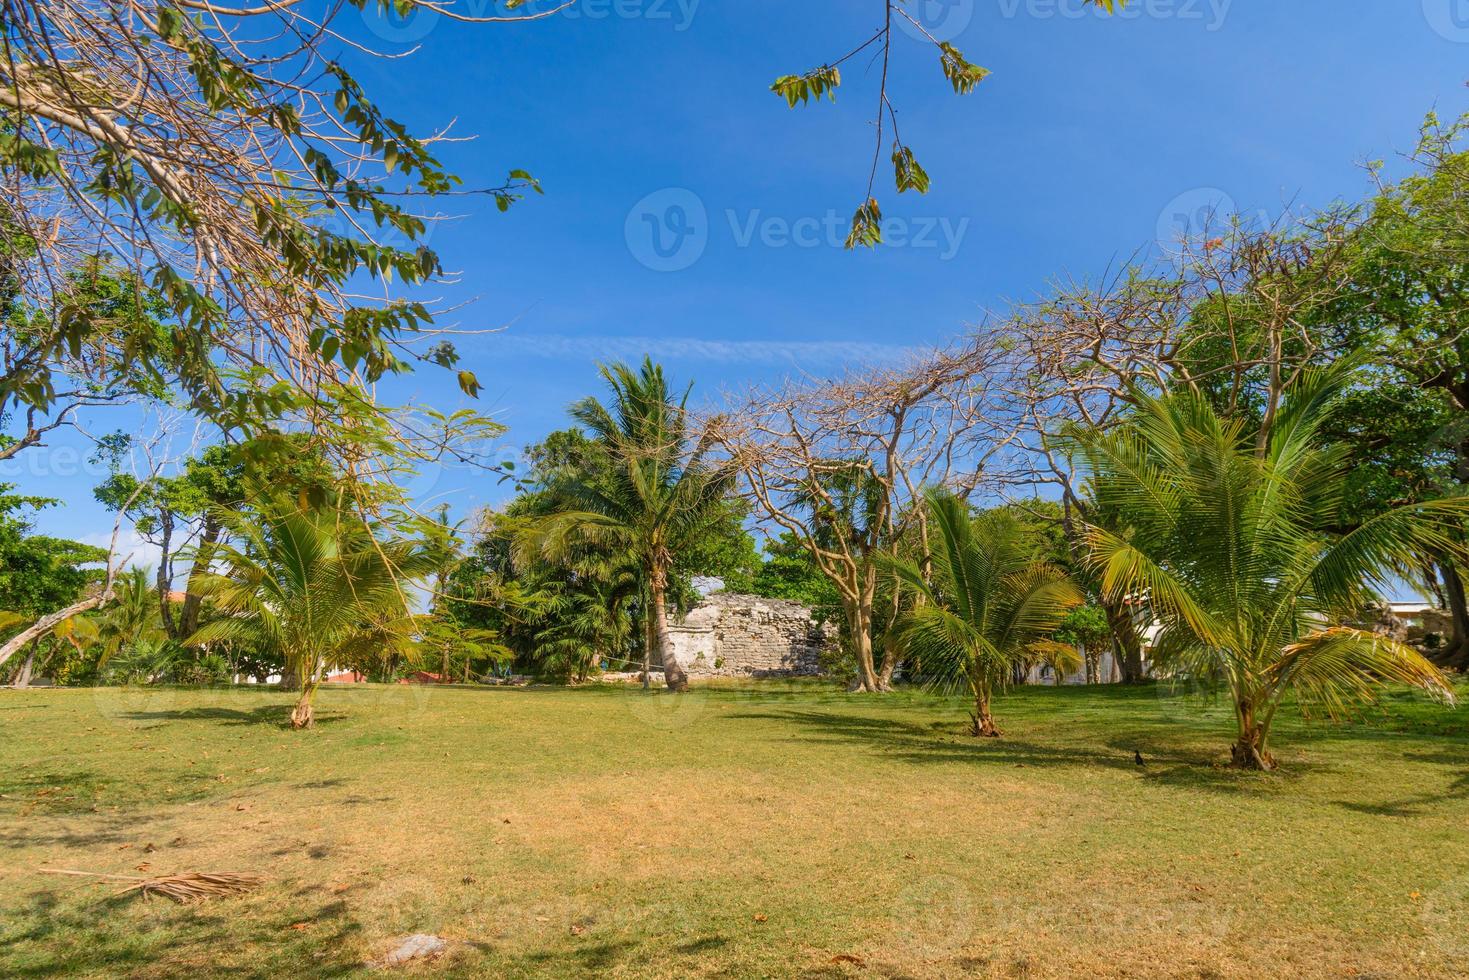 Ruines mayas de playacar dans le parc forestier de playa del carmen, yucatan, mexique photo